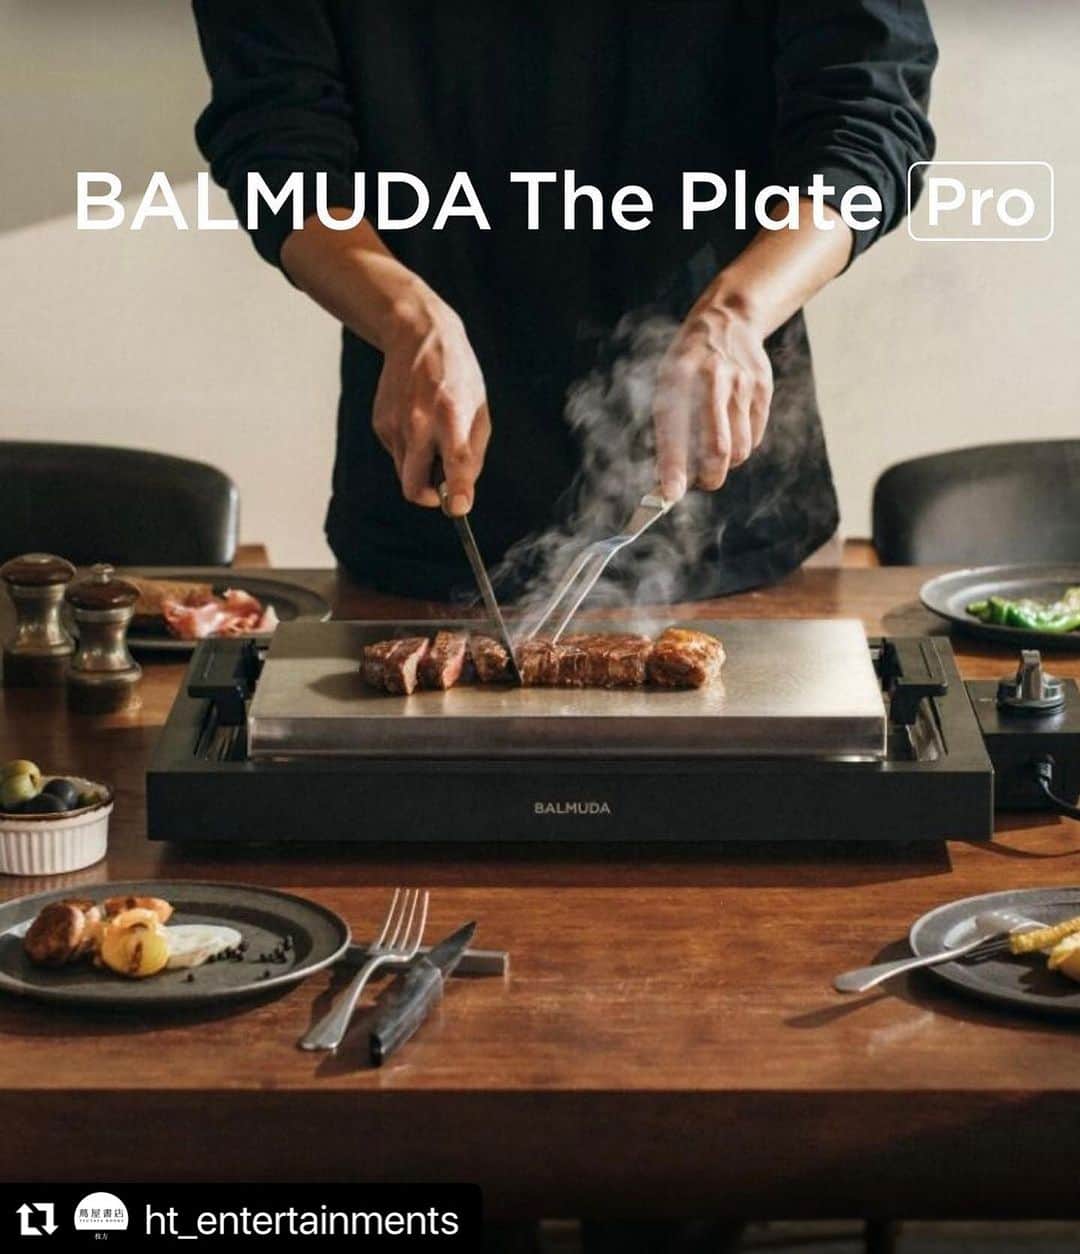 枚方T-SITEのインスタグラム：「【枚方 蔦屋書店エンタメコーナーよりお知らせ】  こんなおしゃれなホットプレートなら、いつもよりちょっと奮発したお肉で、ステーキパーティしたくなりますね。  ・・・・・・・・・・・・・・・  10月12日より発売開始！ BALMUDAに新しくホットプレートが仲間入り。  BALMUDA The Plate Proが発売されました。  6.6mm厚の3層グラッドプレートと正確な温度制御により、さまざまな料理をプロの味わいに焼き上げます。 絶妙な焼き加減のステーキや、本場のお好み焼き、憧れのクレープまで。  BALMUDAだけのライブキッチン体験をお届けします。 店頭にも展示しております。 ご購入は店頭もしくは当店ECサイトまで。  #balmuda #balmudatheplatepro  #おしゃれキッチン家電 #おしゃれ家電 #キッチン家電 #ホットプレート #蔦屋家電 #枚方蔦屋書店 #hirakatatsite #枚方tsite」